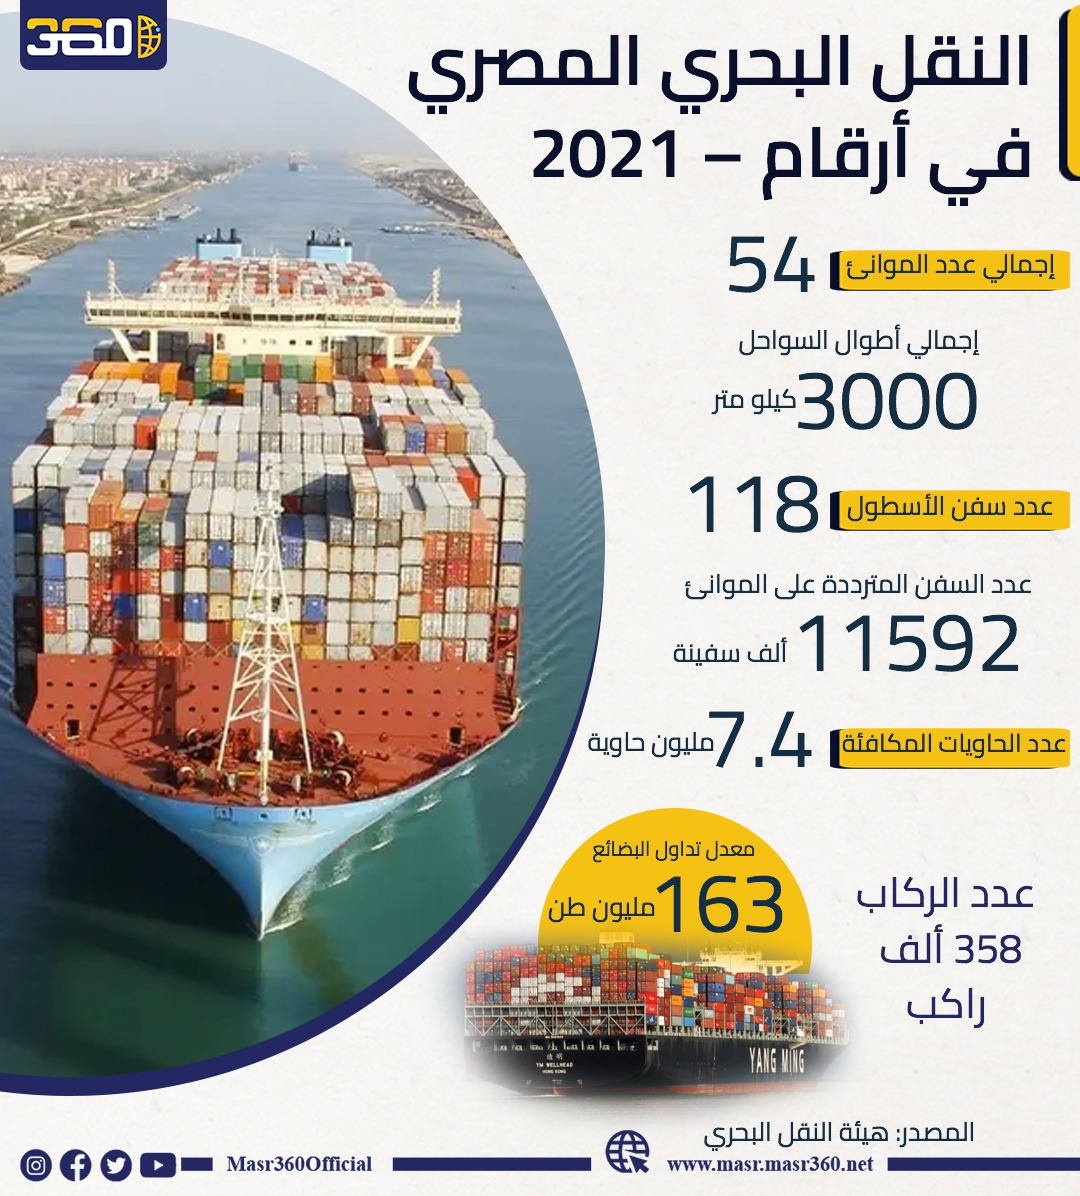 النقل البحري المصري في أرقام